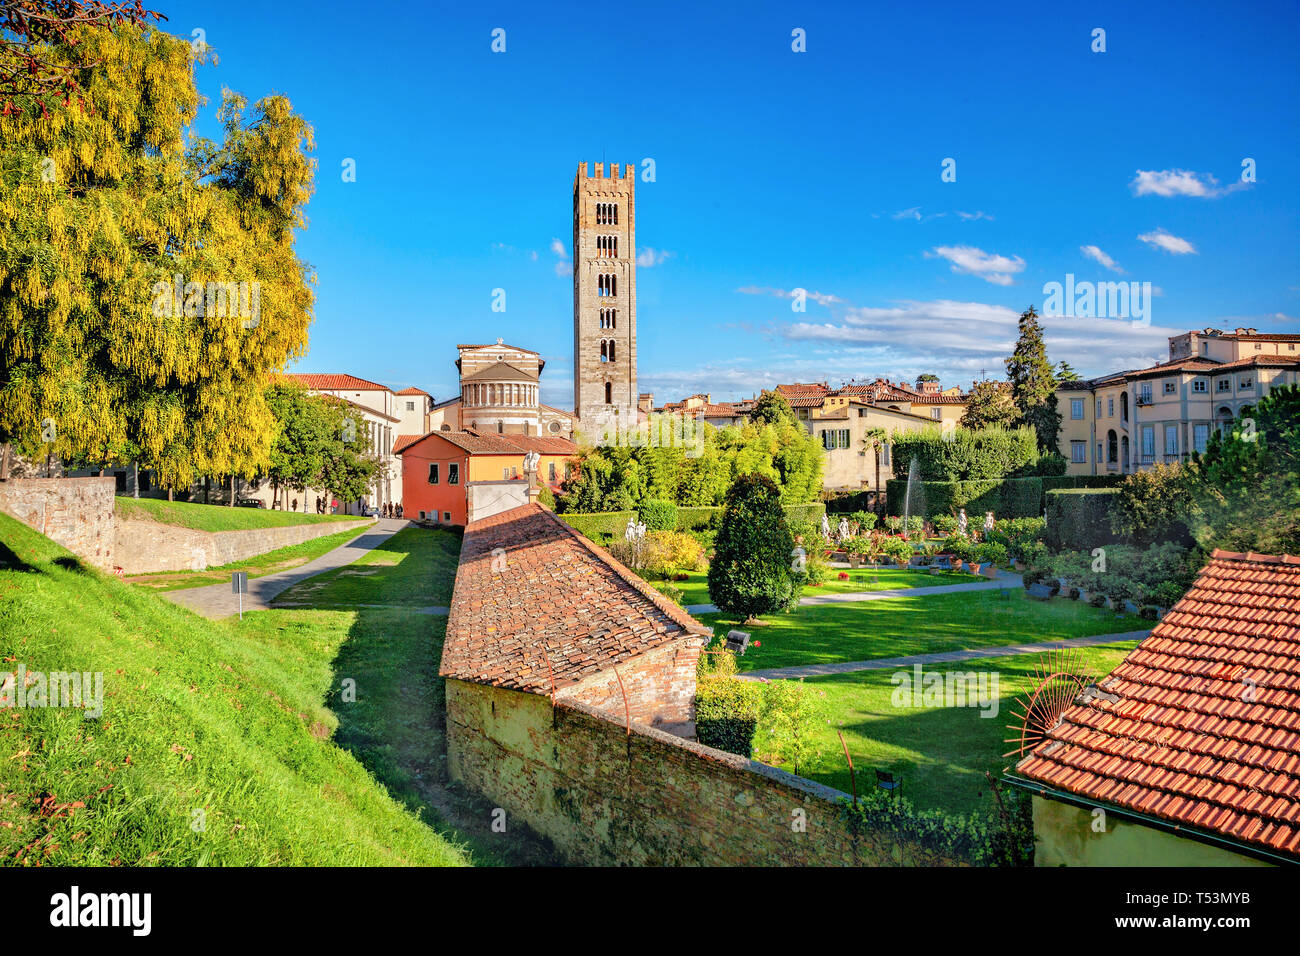 Stadtbild mit Basilika di San Frediano und Gärten des Palazzo Pfanner in der mittelalterlichen Stadt Lucca. Toskana, Italien Stockfoto